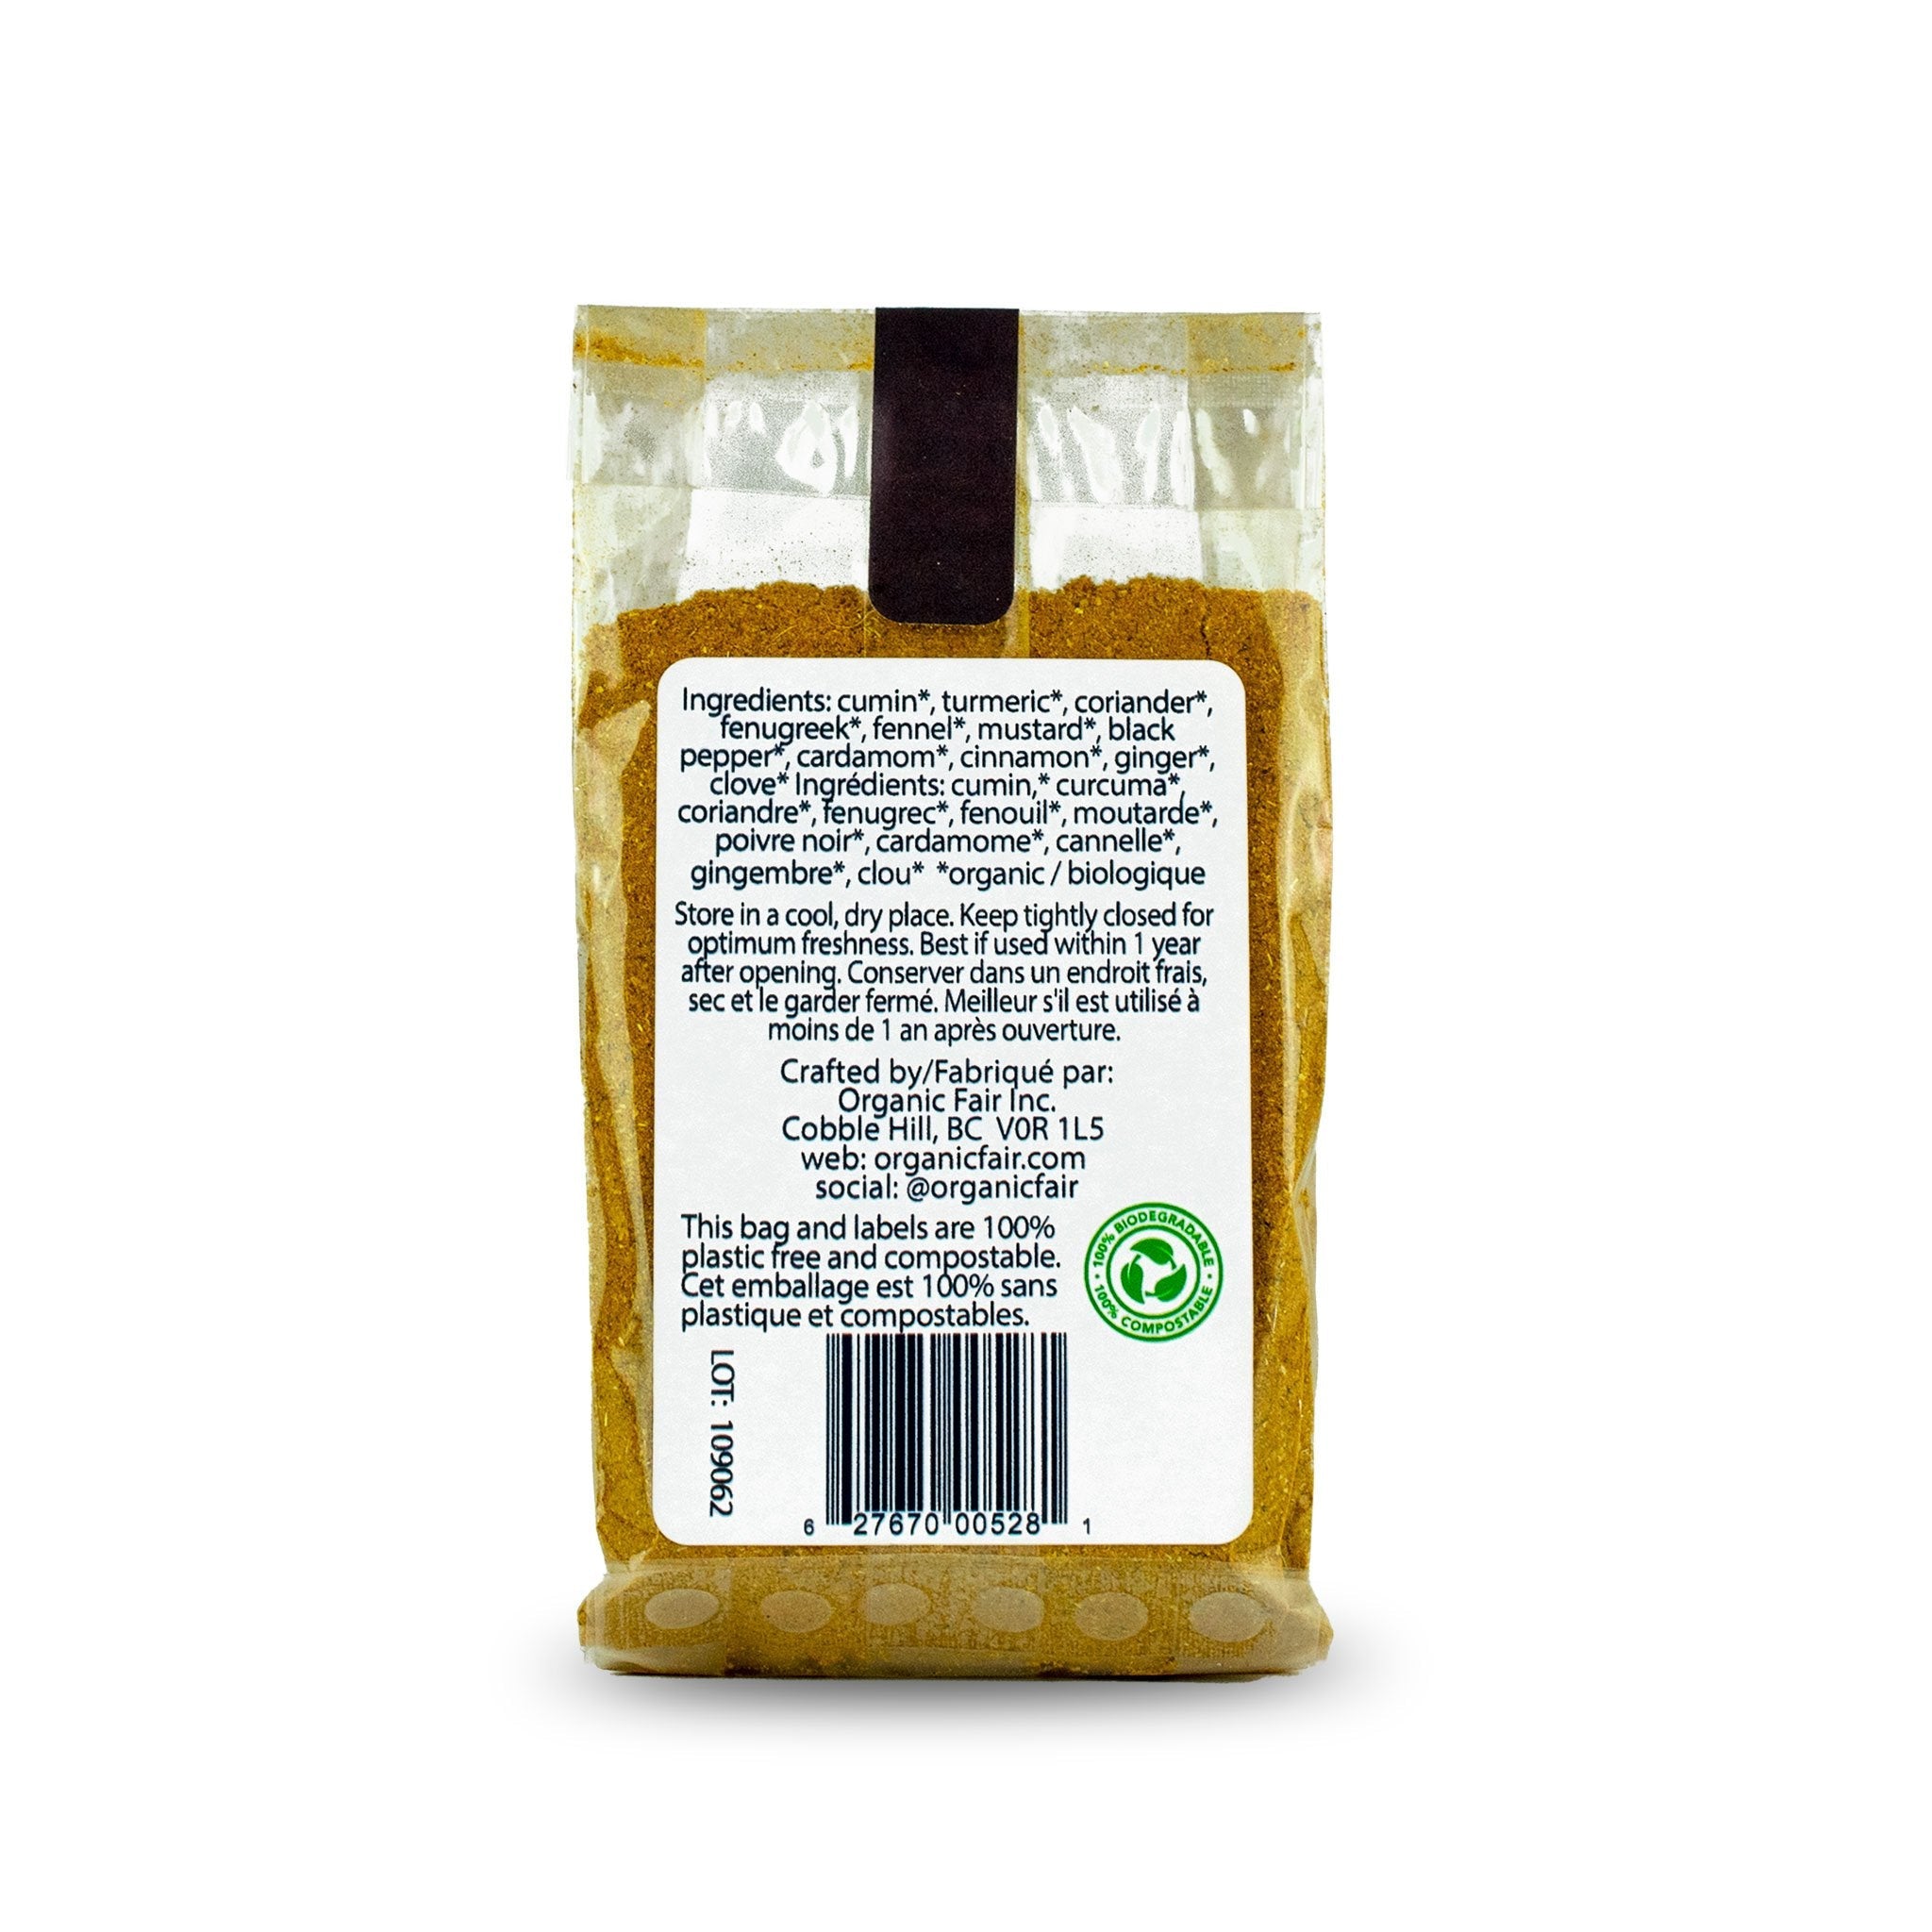 Madras Yellow Curry Spice Blend - Bag 80g - organicfair.com